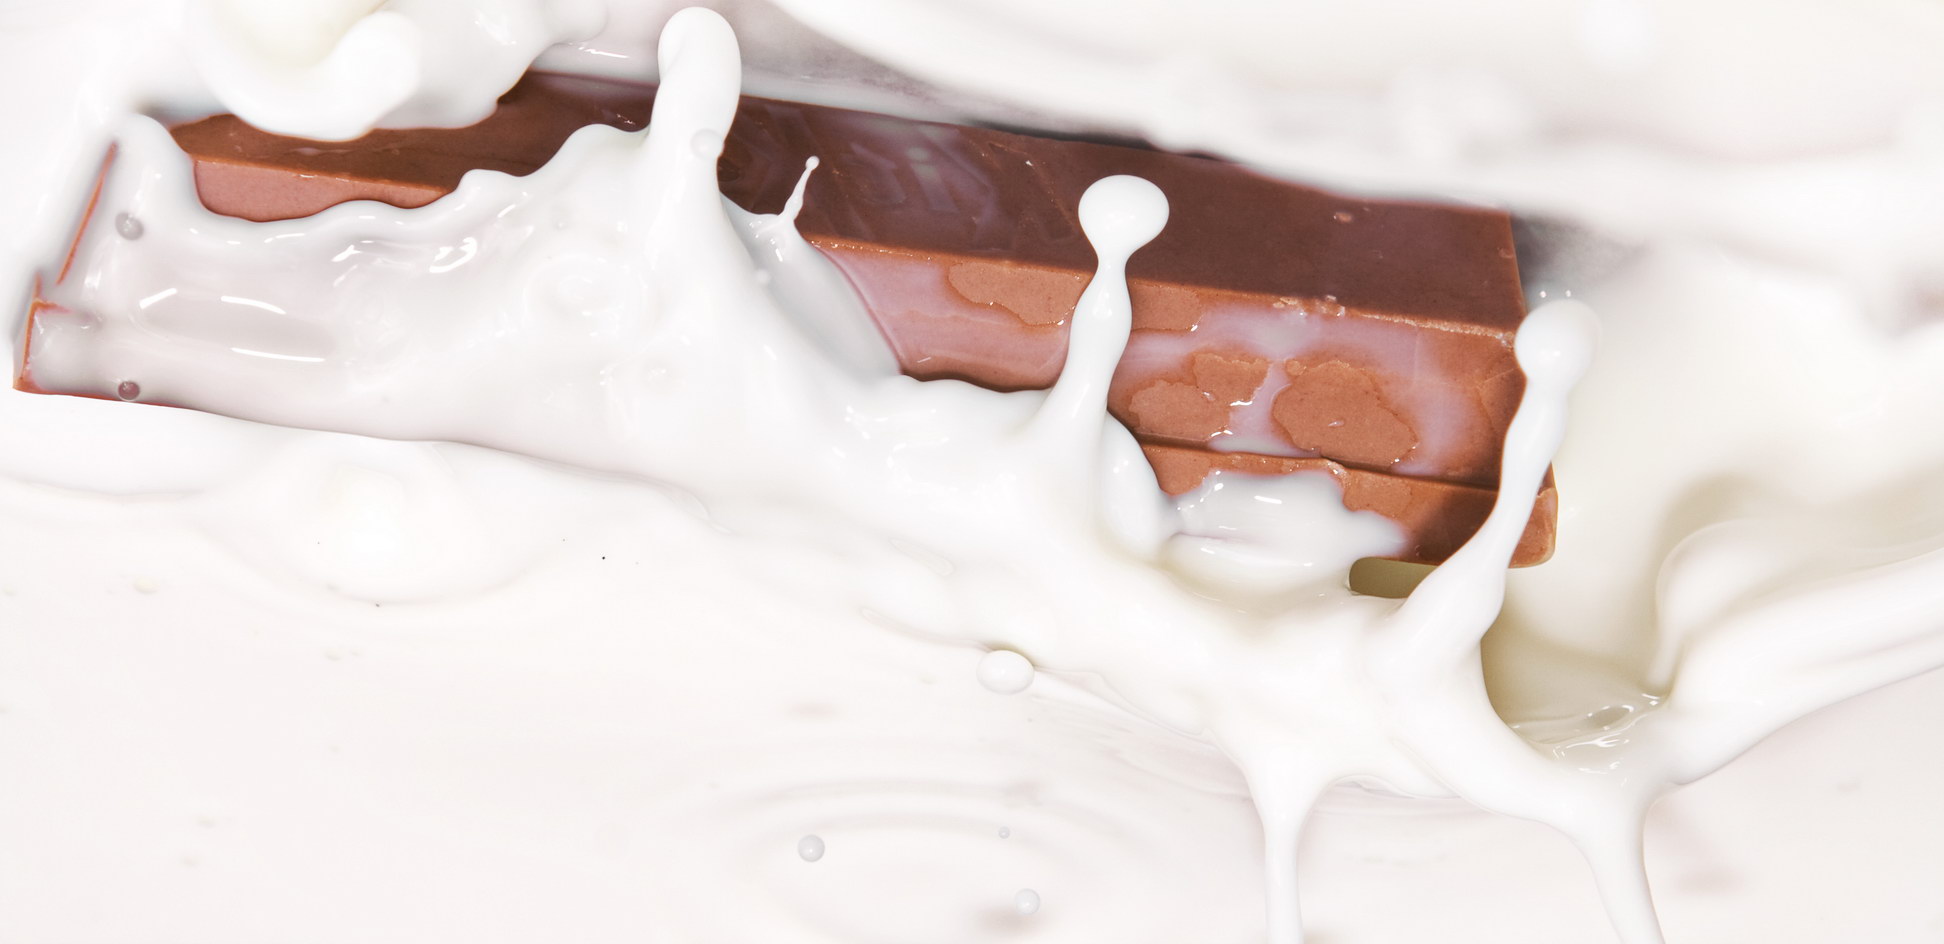 Chocolate splashing in milk photo